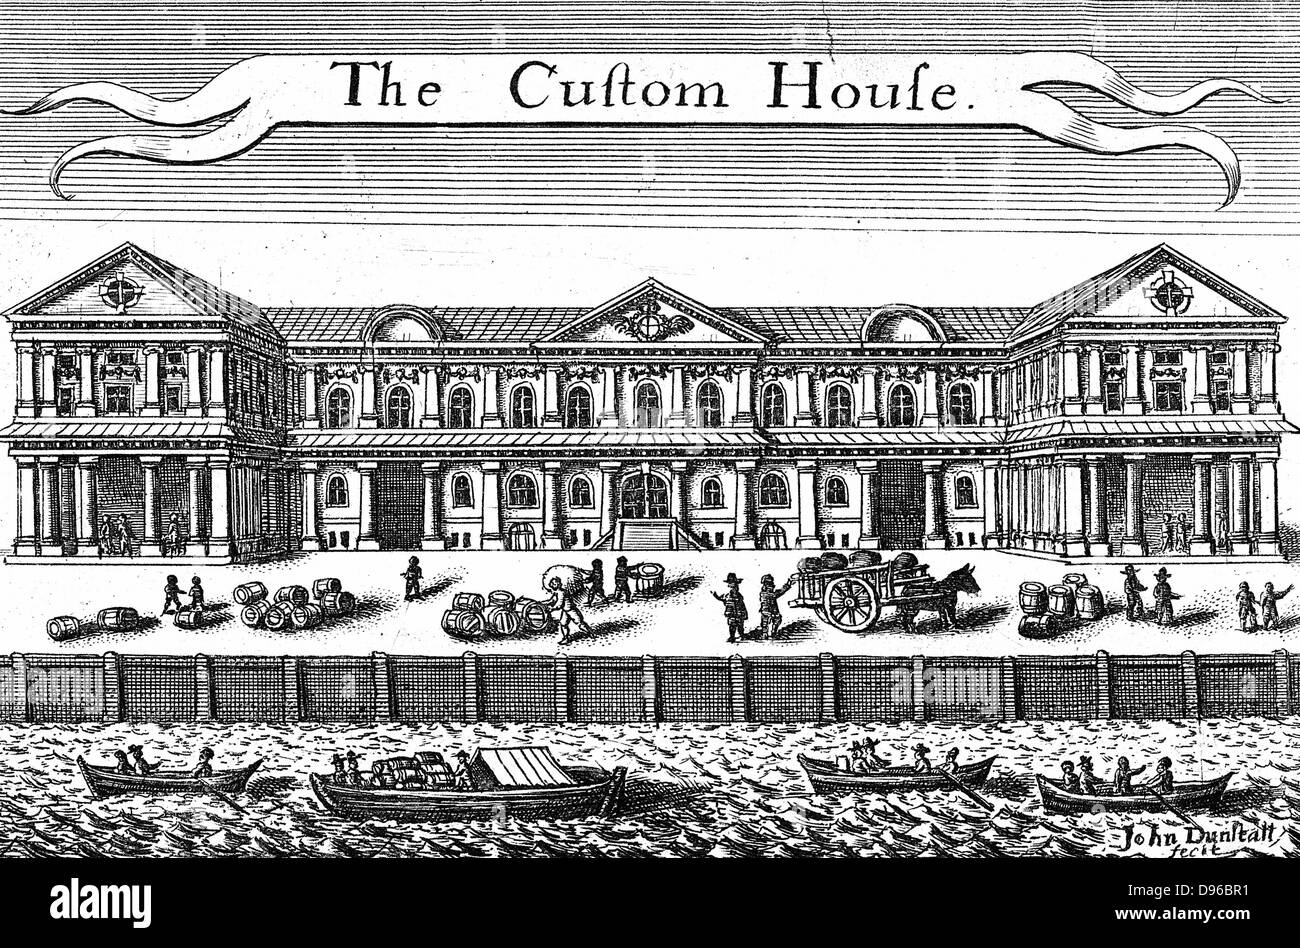 Le Custom House, Londres. Gravure par j j active (c1660), Londres Banque D'Images